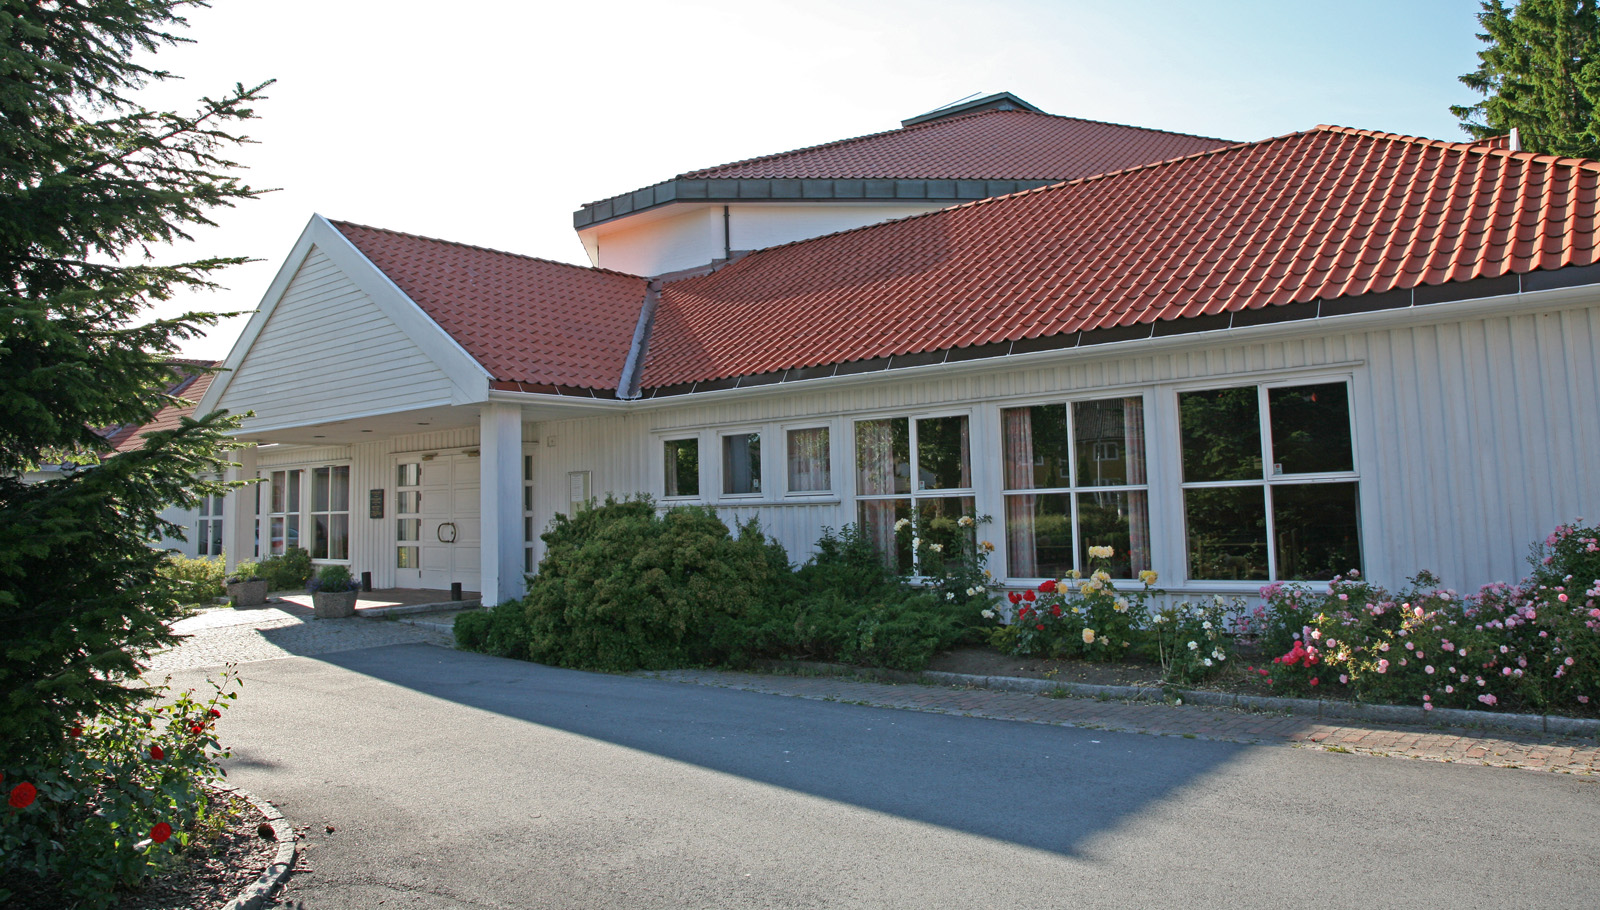 Lund kirke